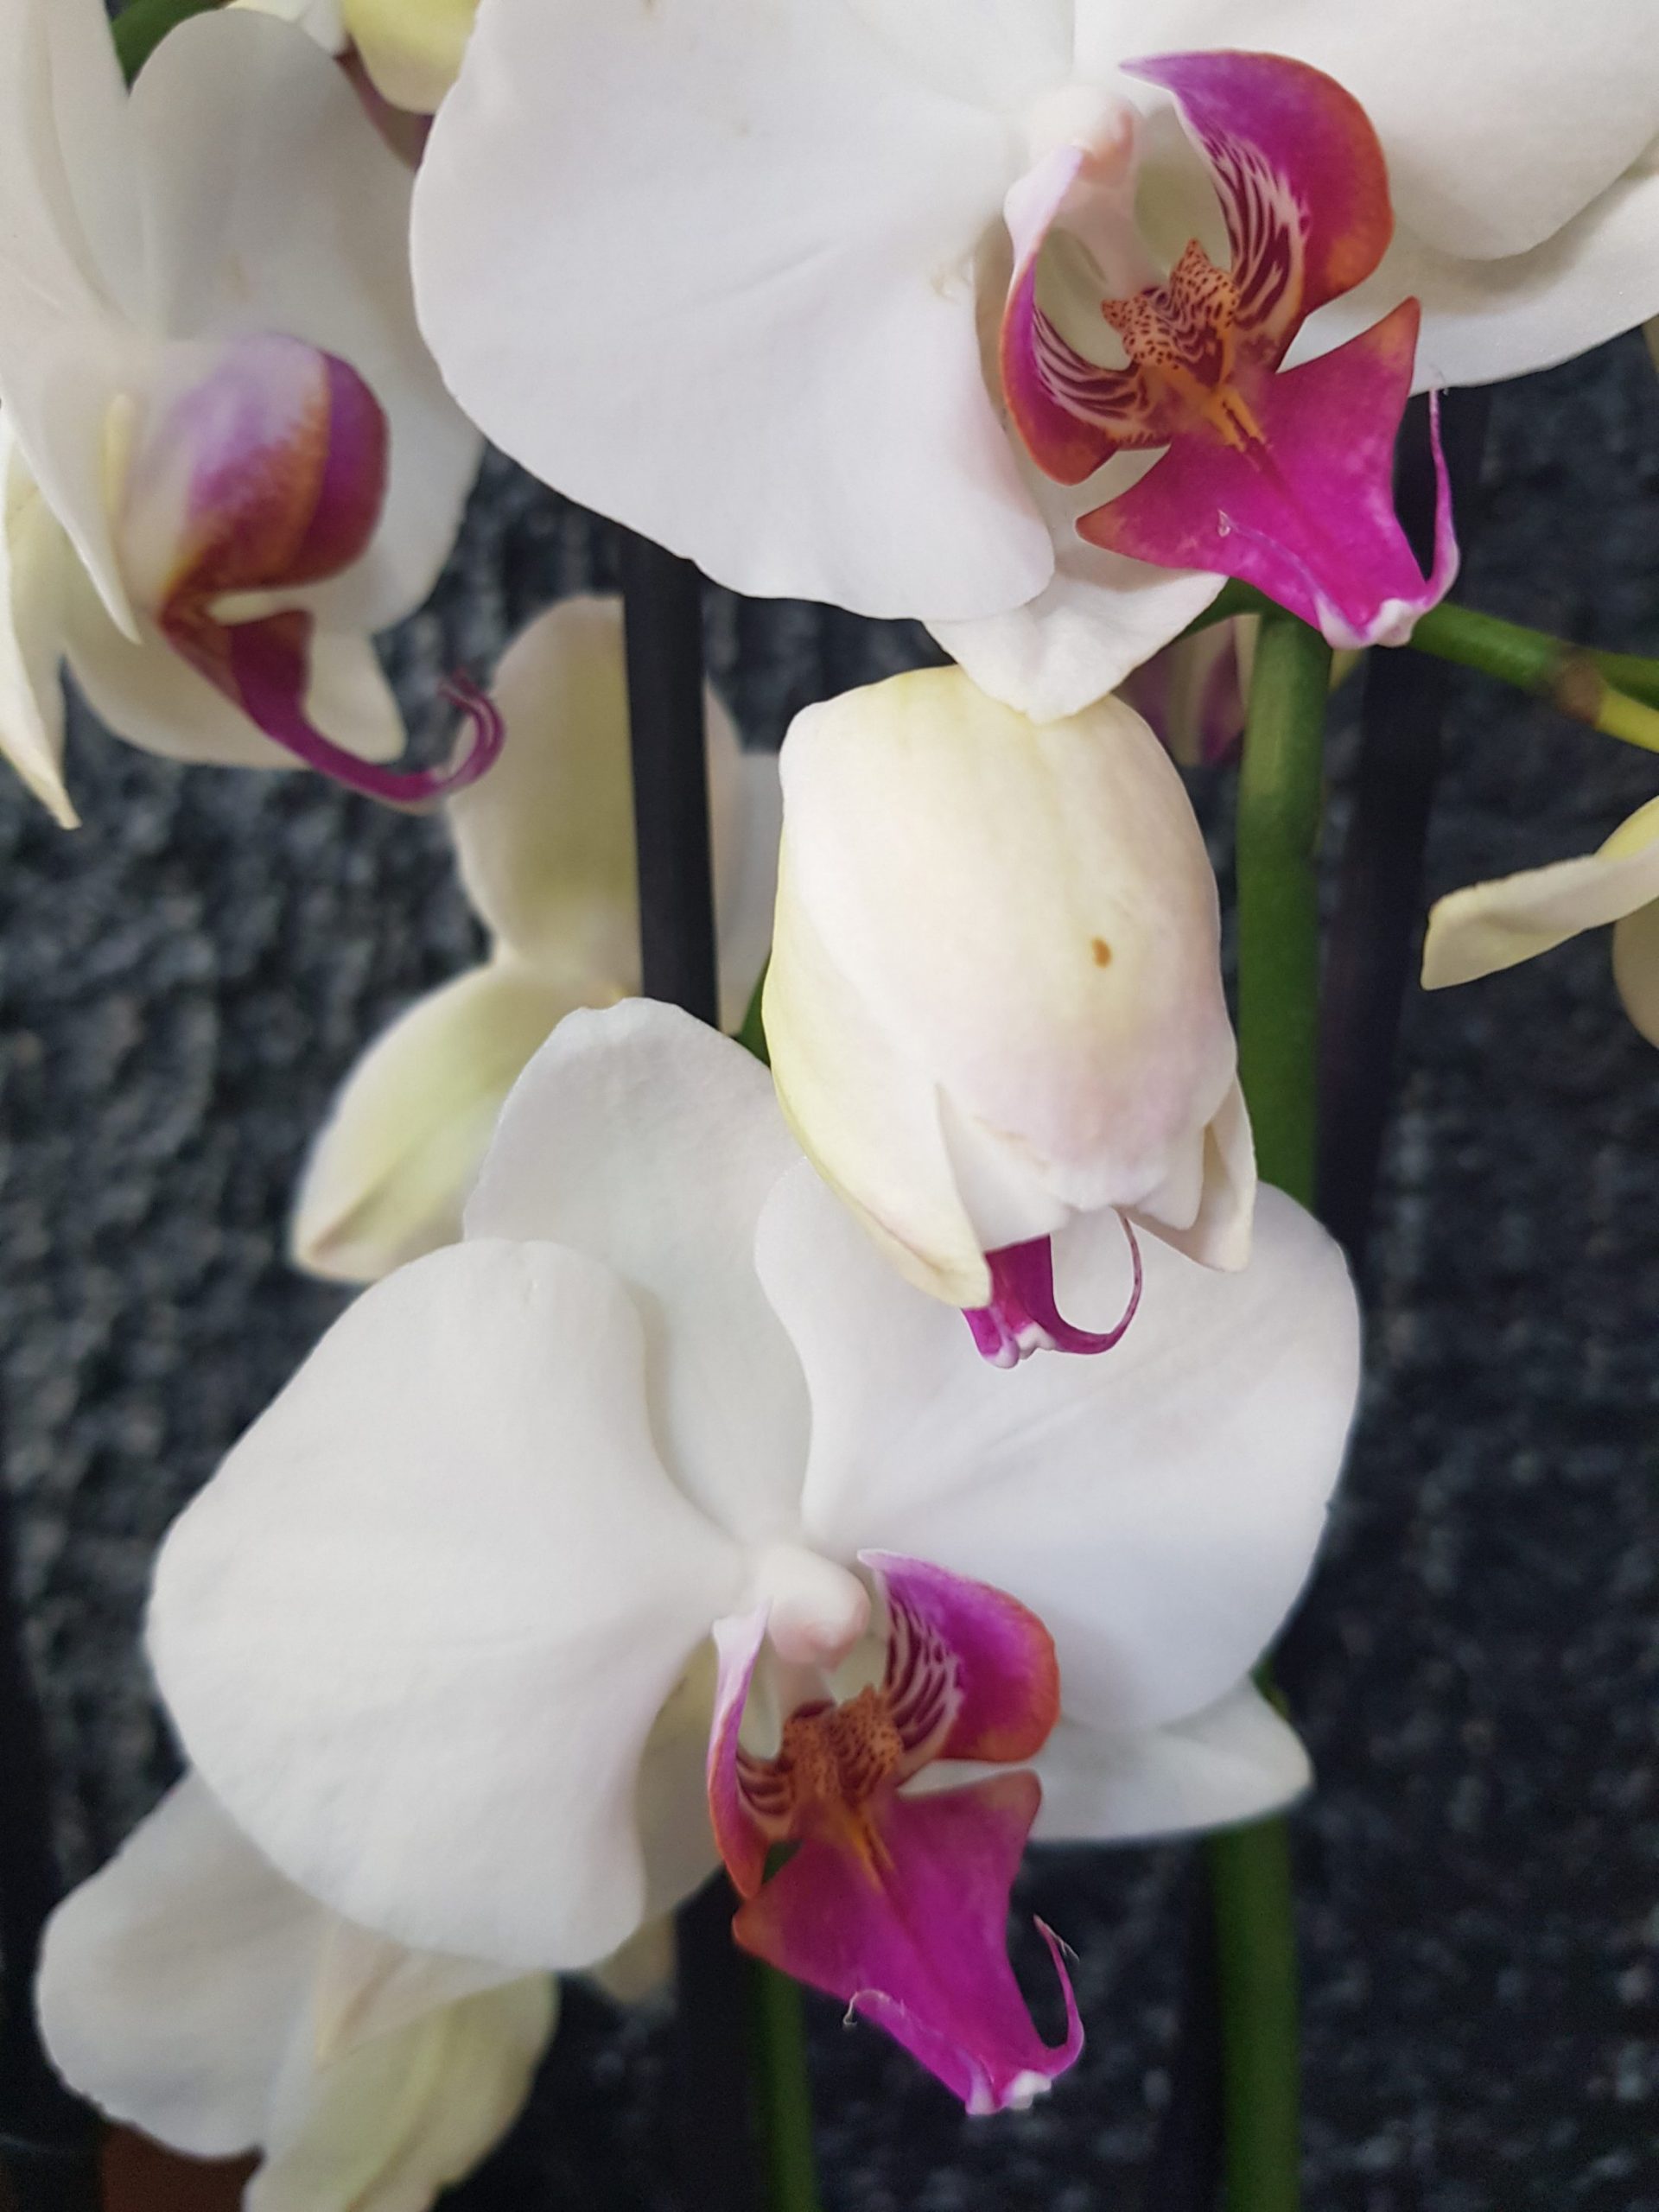 Oecoplan Terreau orchidées 3L Acheter chez JUMBO